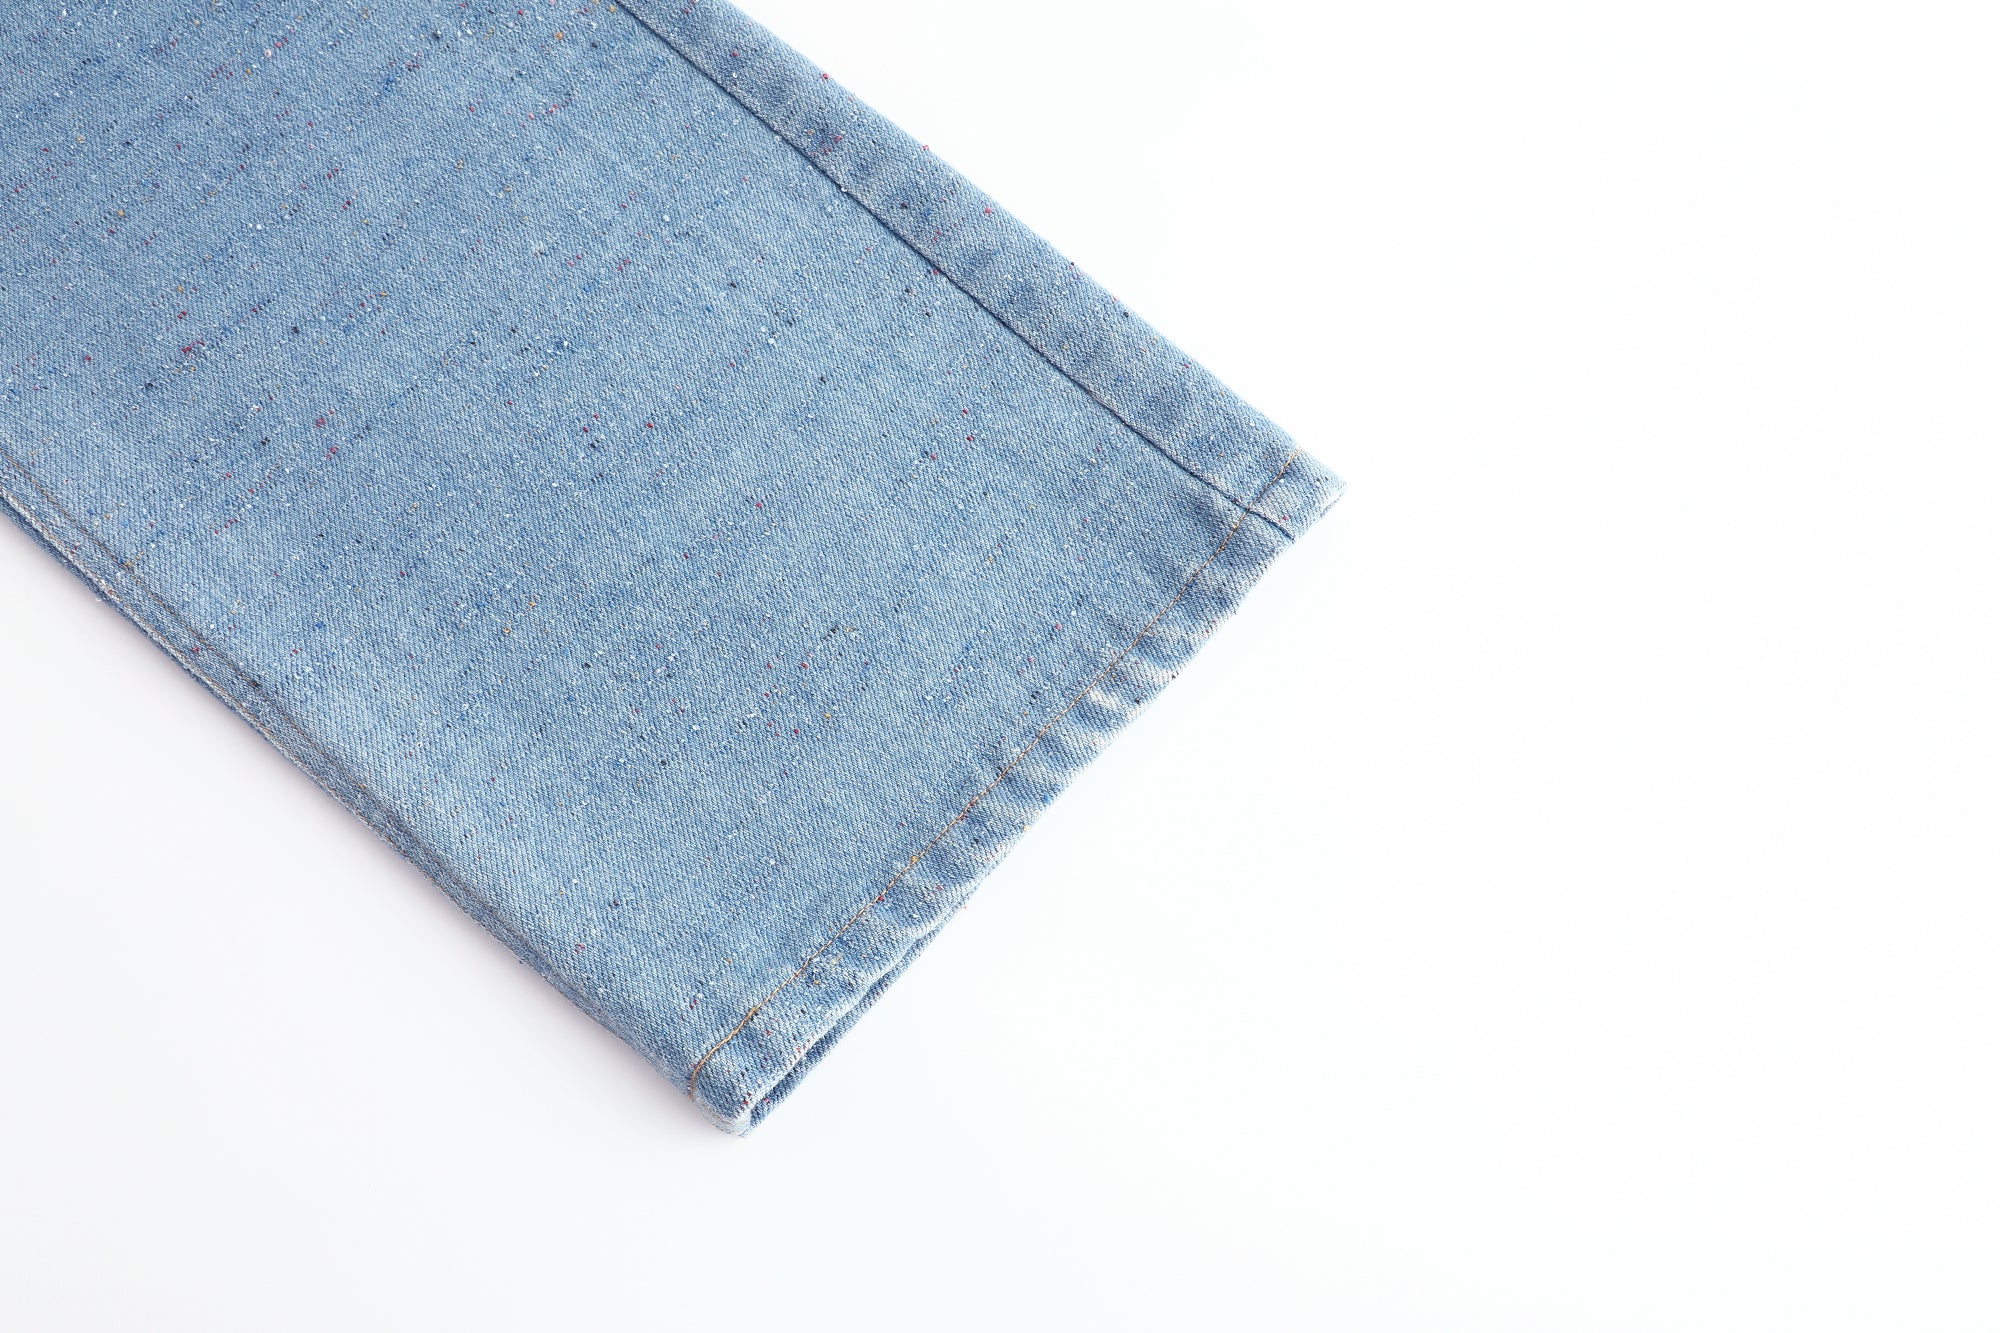 Alexia Sandra Blue Colored Denim Jeans | MADA IN CHINA